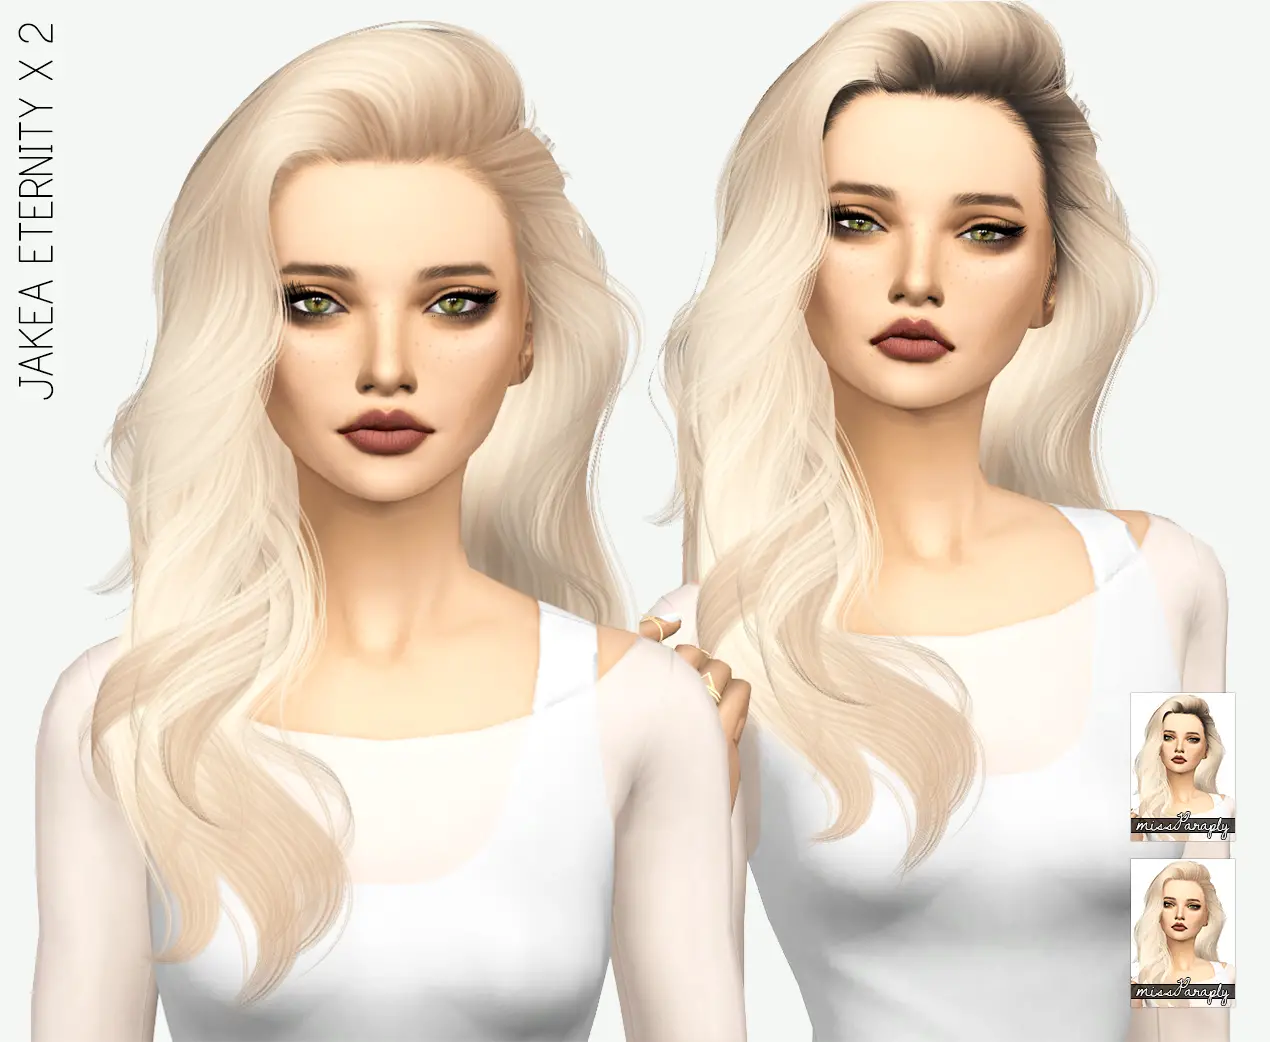 Sims 4 Female Hair Cc Sims 4 Hairs Miss Paraply Jakea Eternity Hair